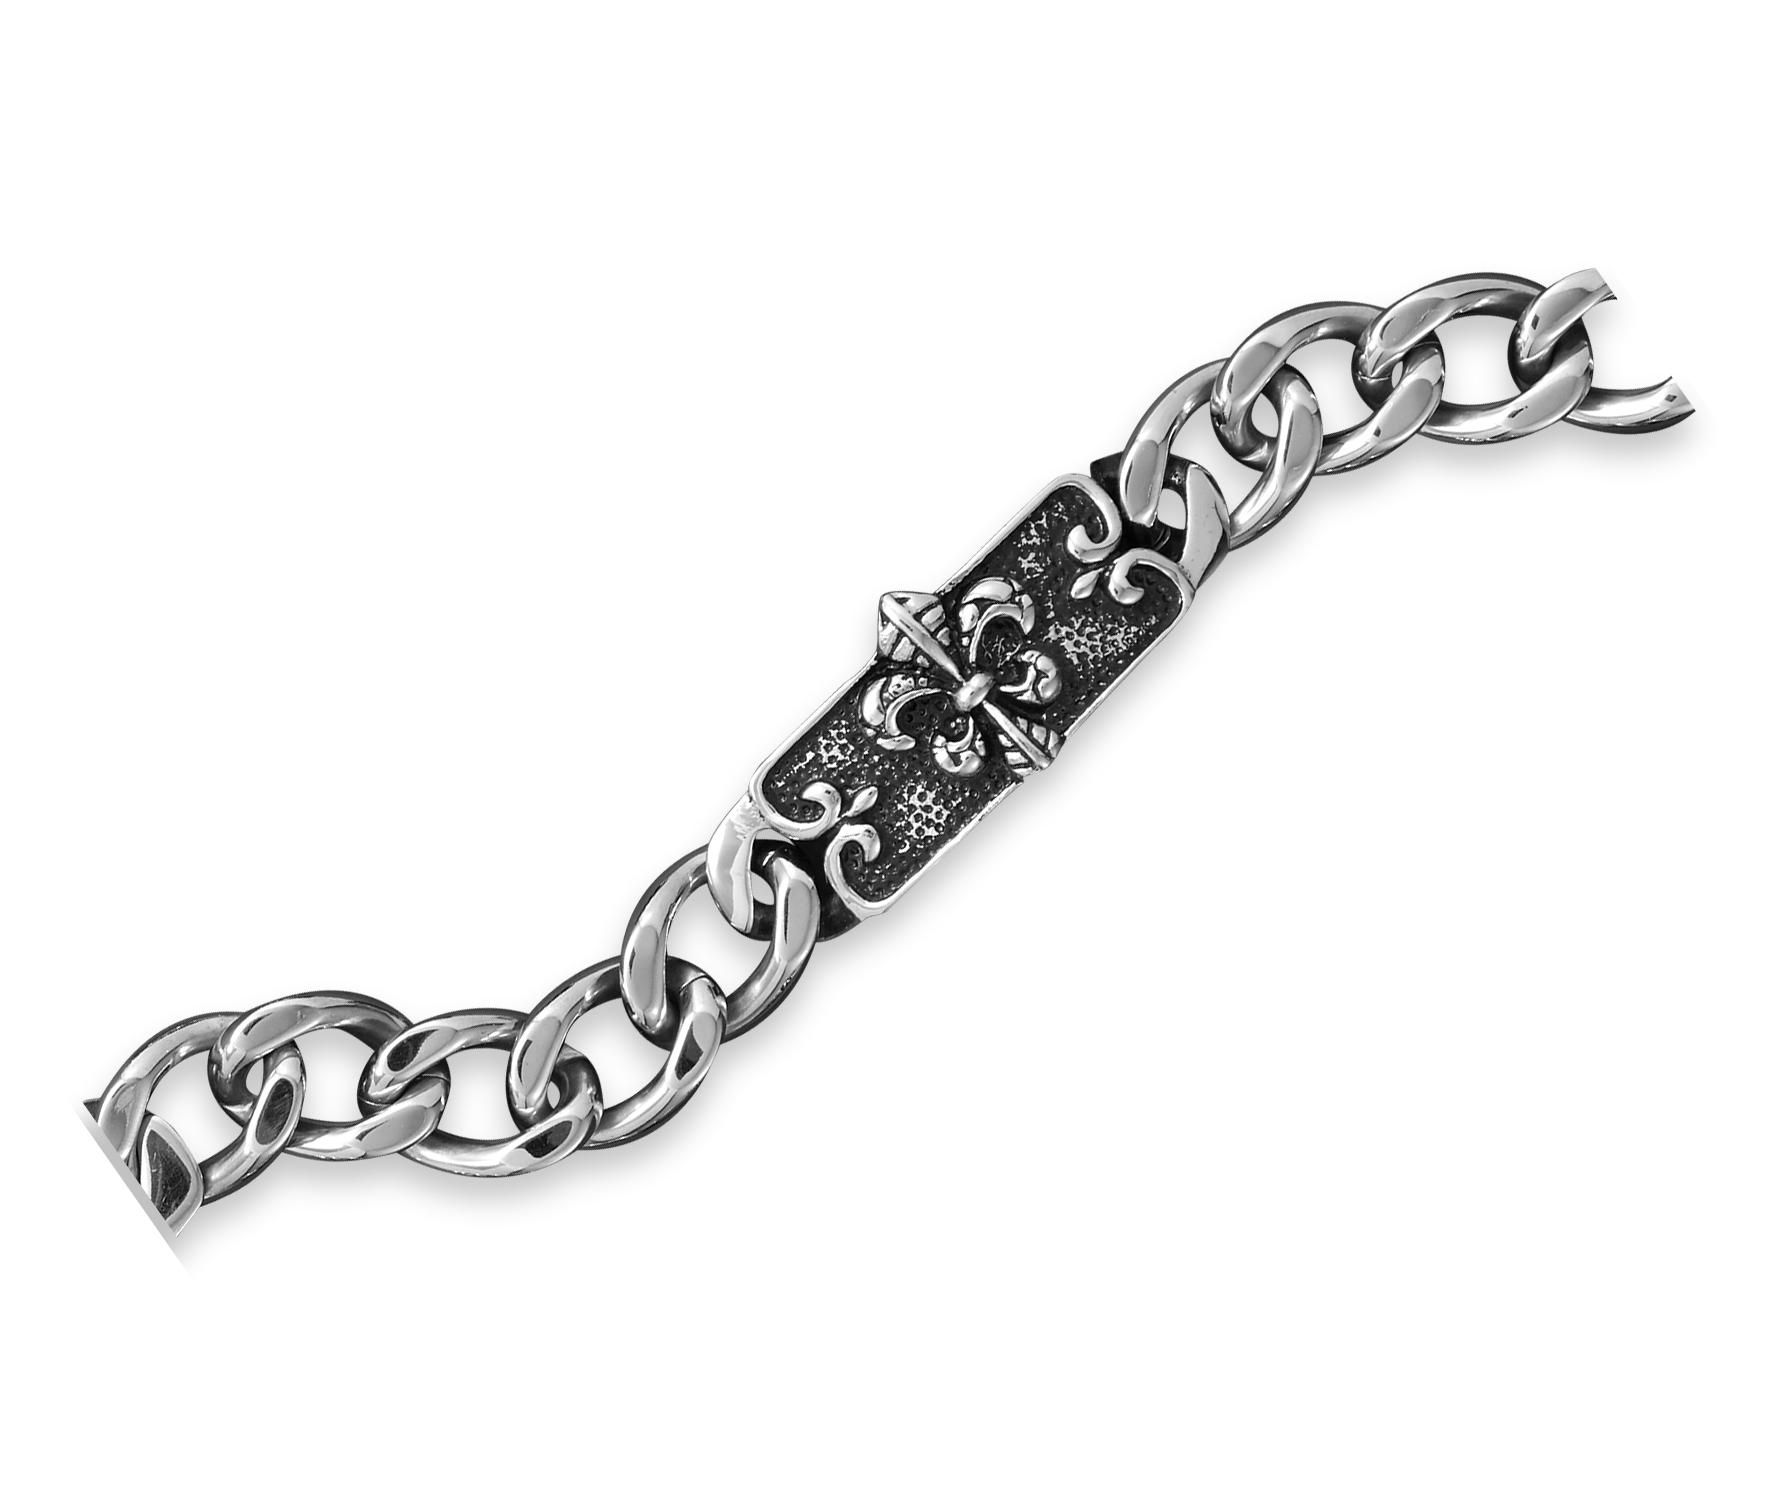 Zia Embossed Silver Oxidized Bracelet Cuff – Teejh